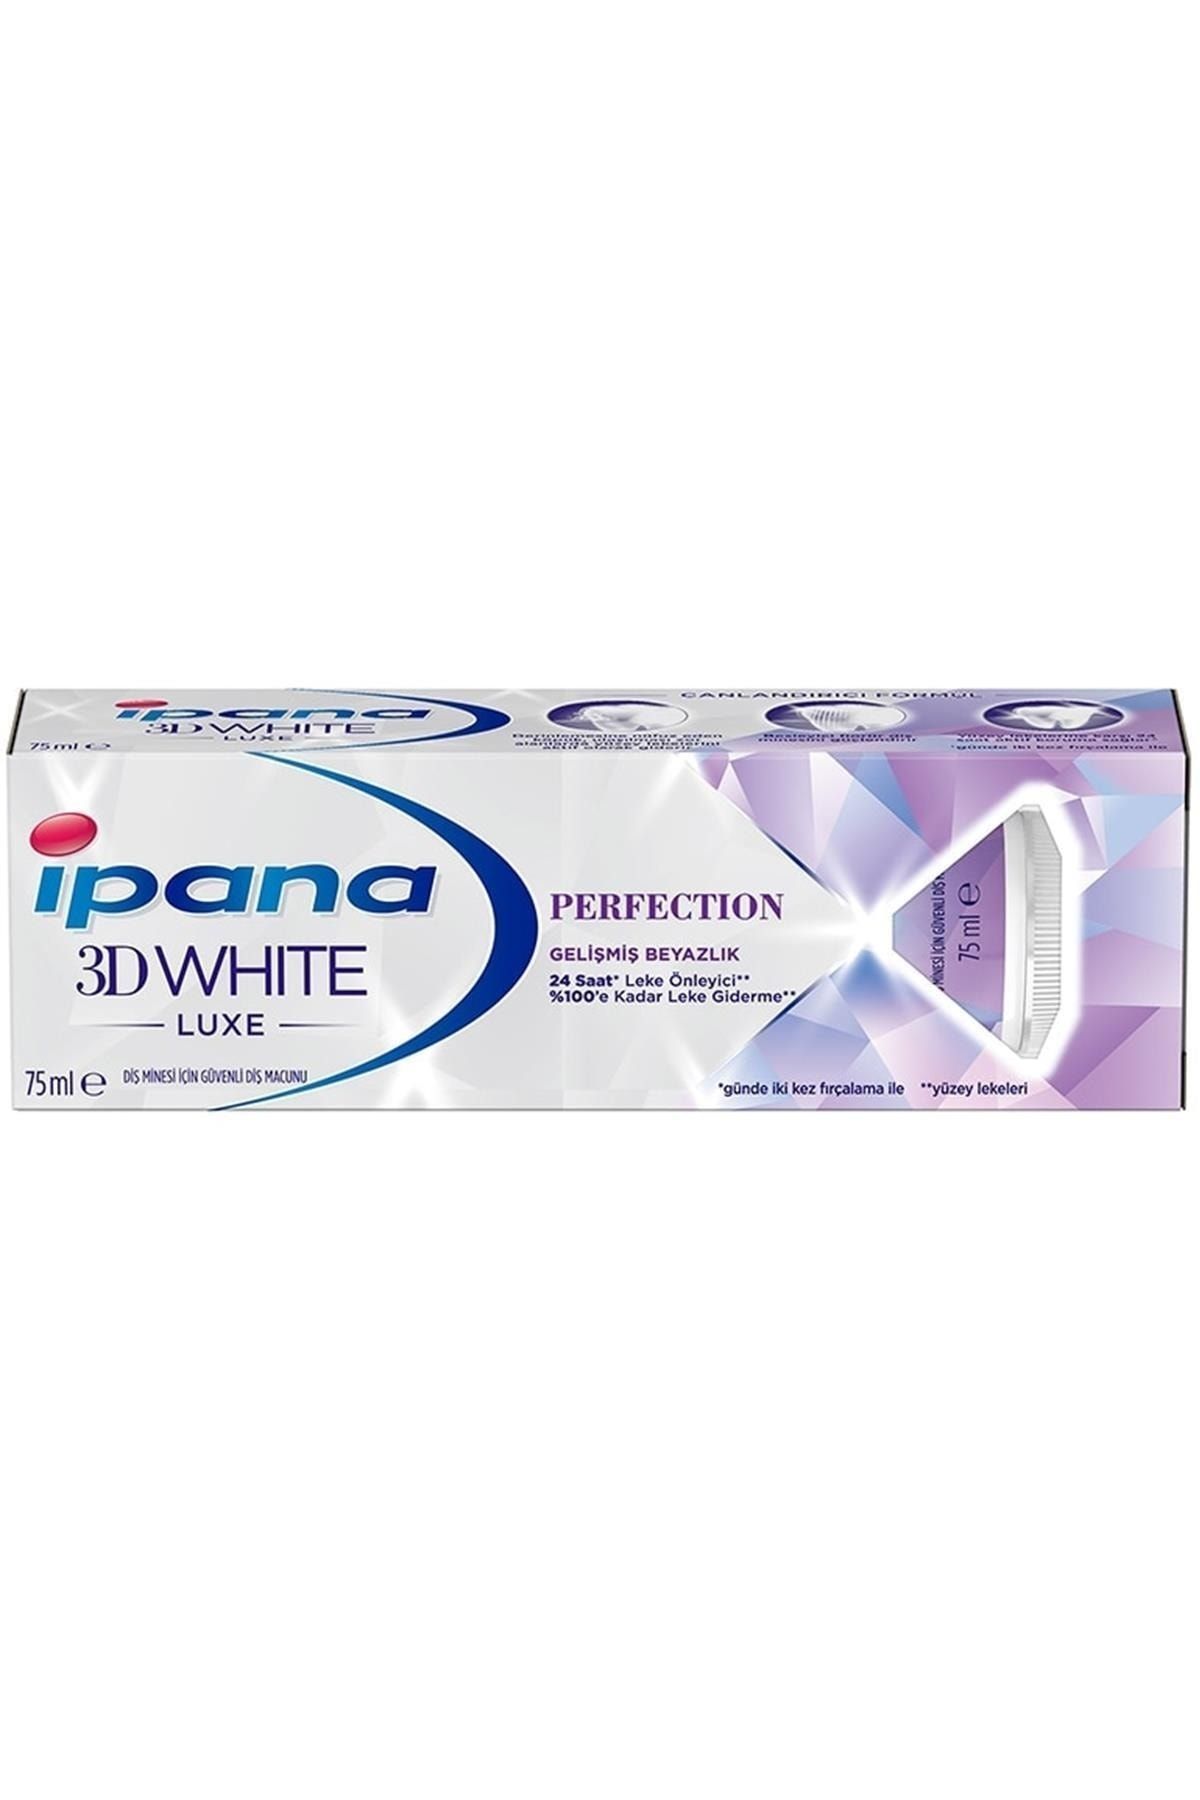 İpana Ipana 3d White Luxe Perfection Diş Macunu 75 Ml Diş Macunu